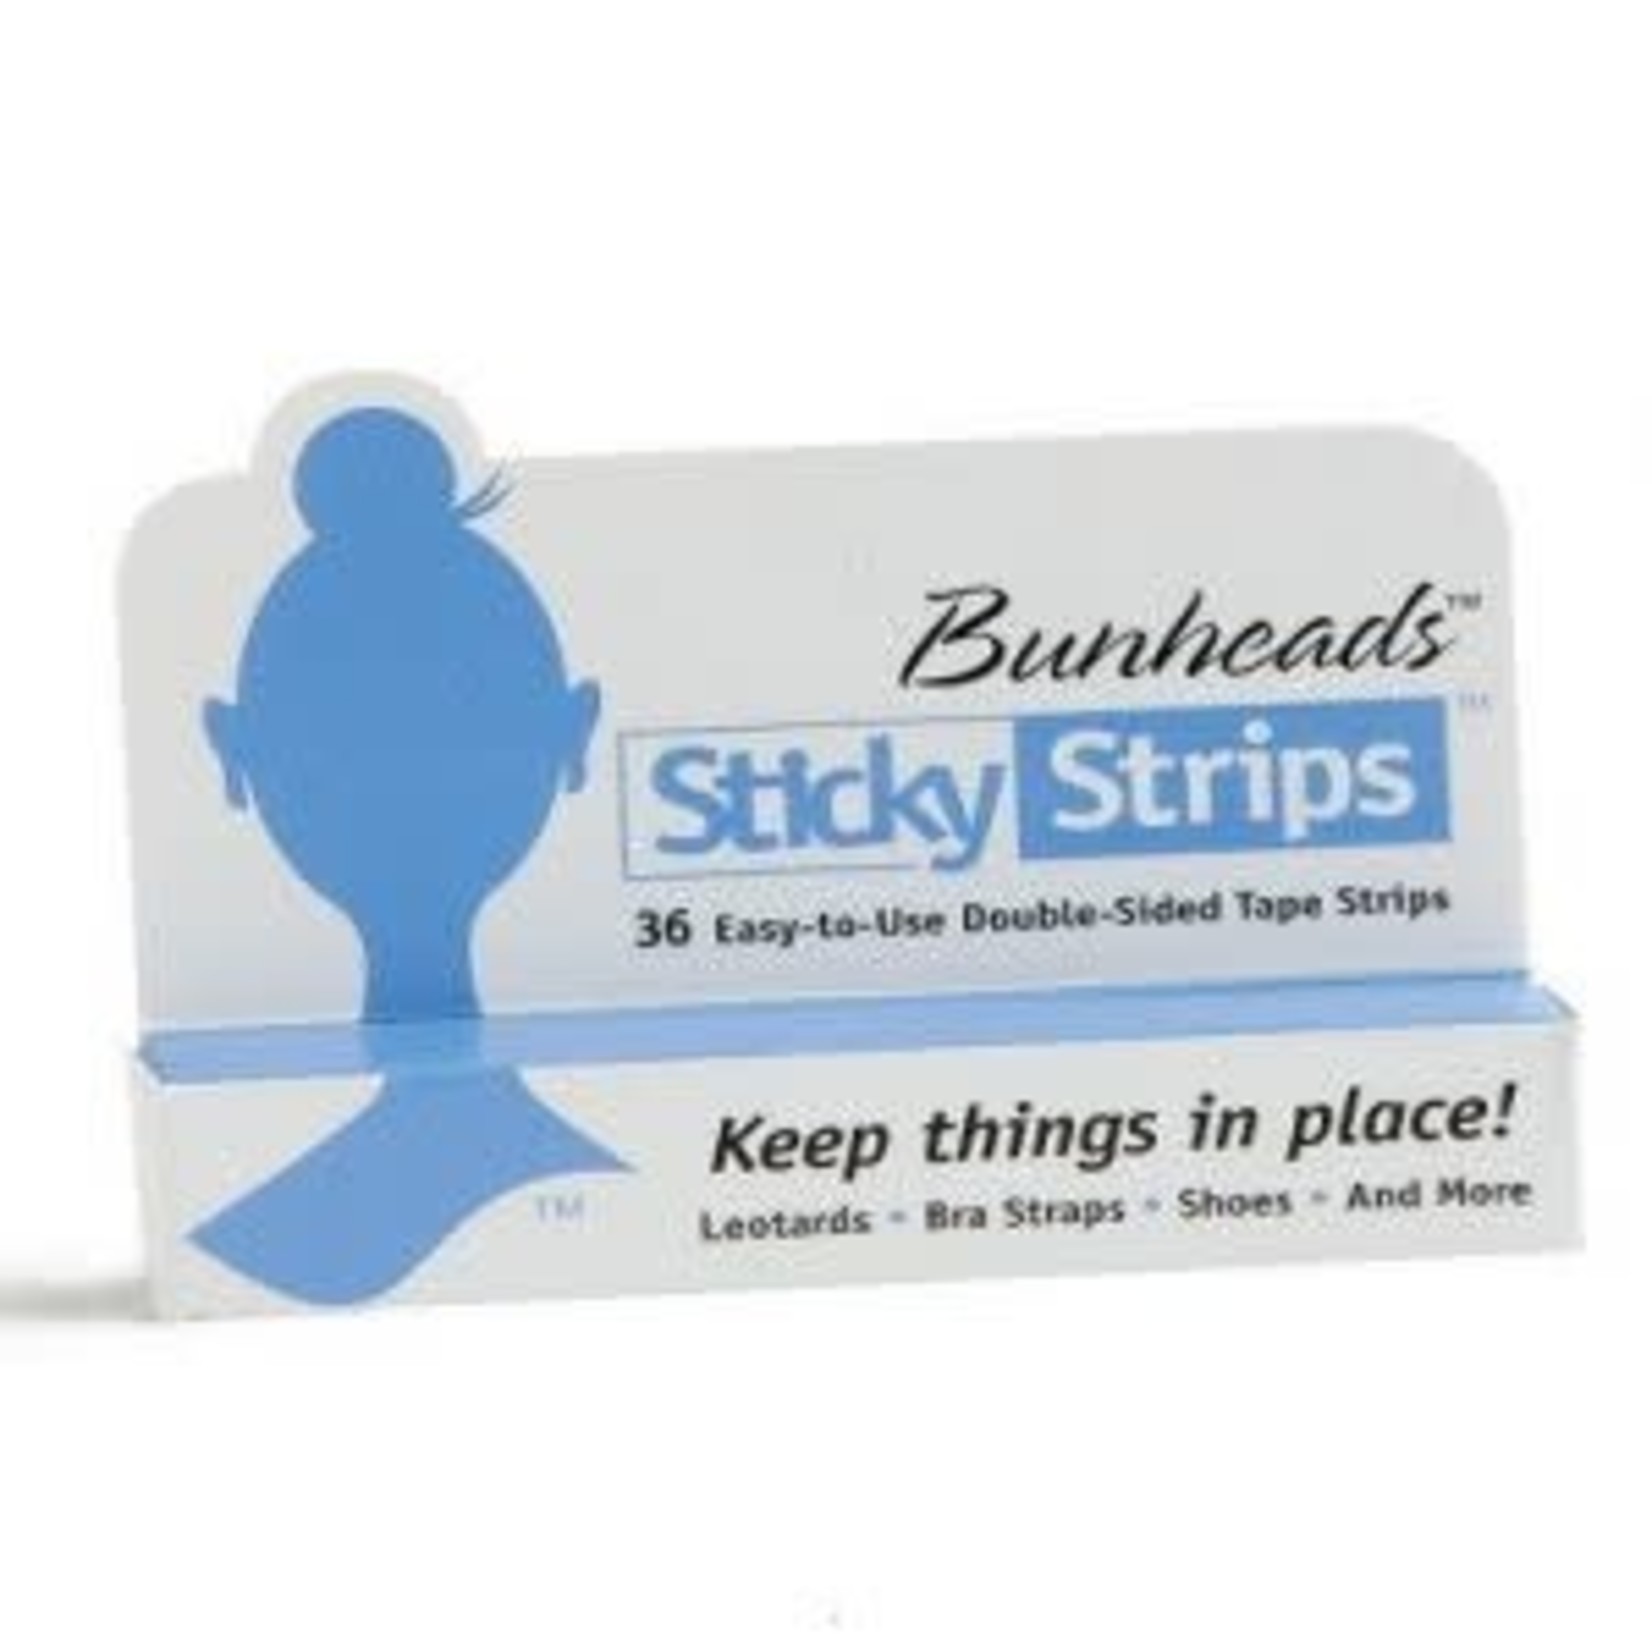 Capezio Bunheads Sticky Strips Double Sided Tape - BH365U